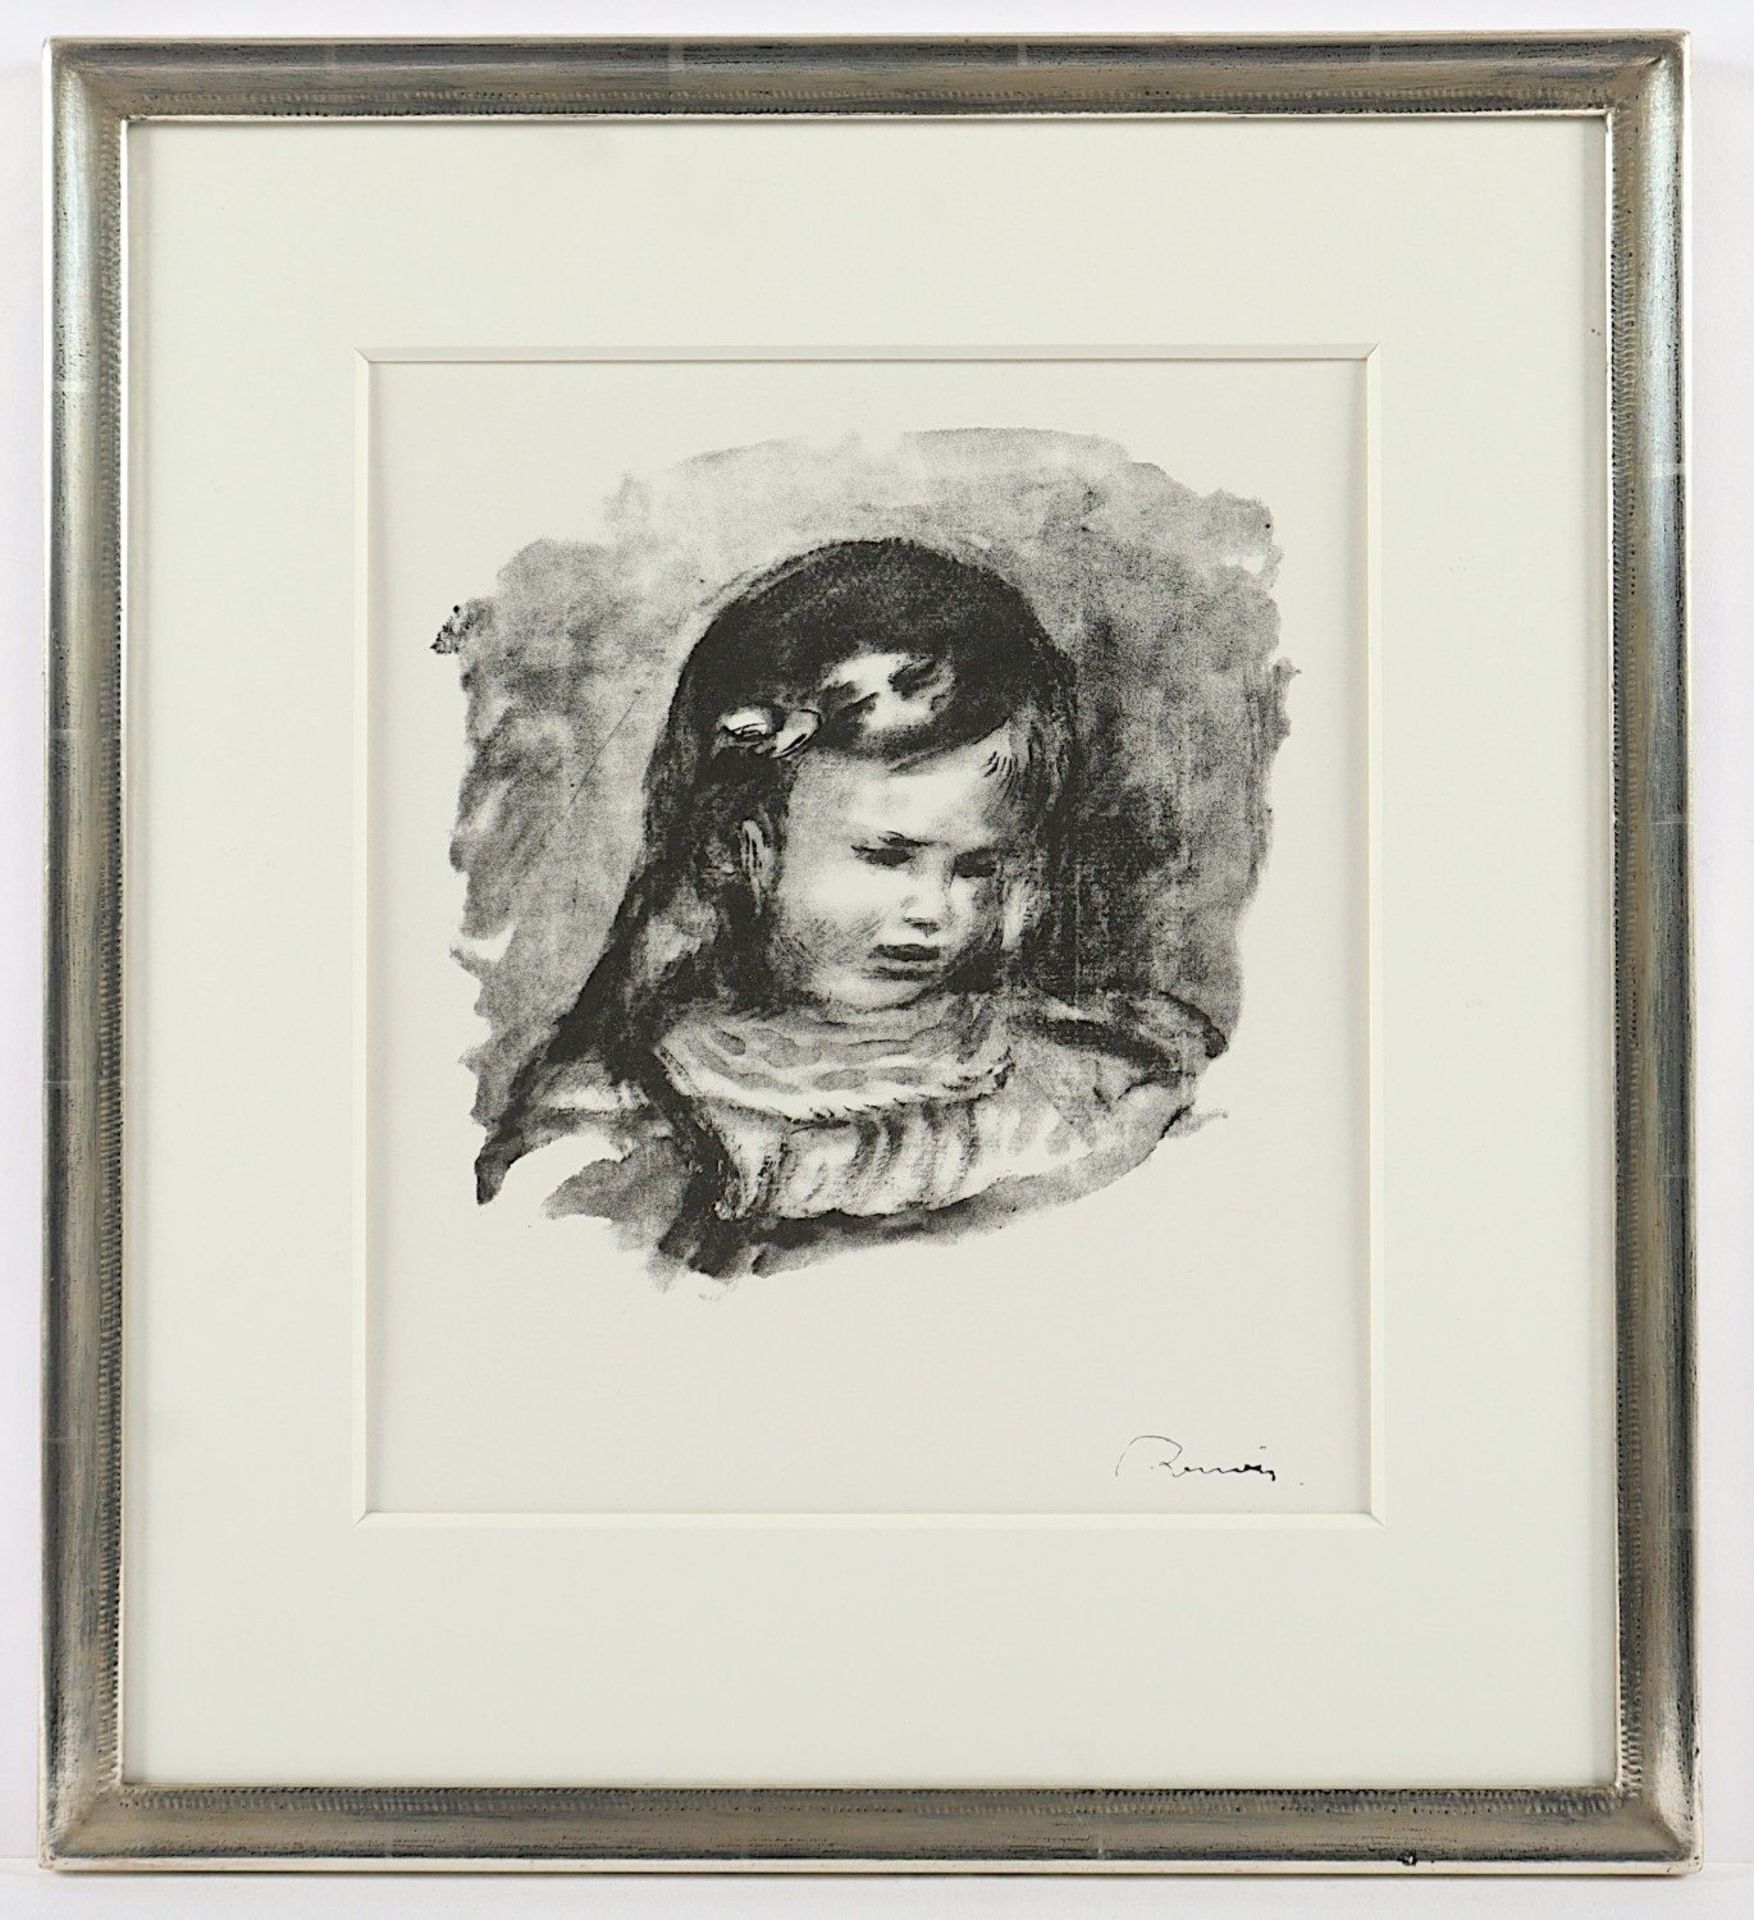 <de>RENOIR, Auguste, "La tête baissée", 1904. Lithografie auf Bütten. Mit Stempel unten rechts, eine